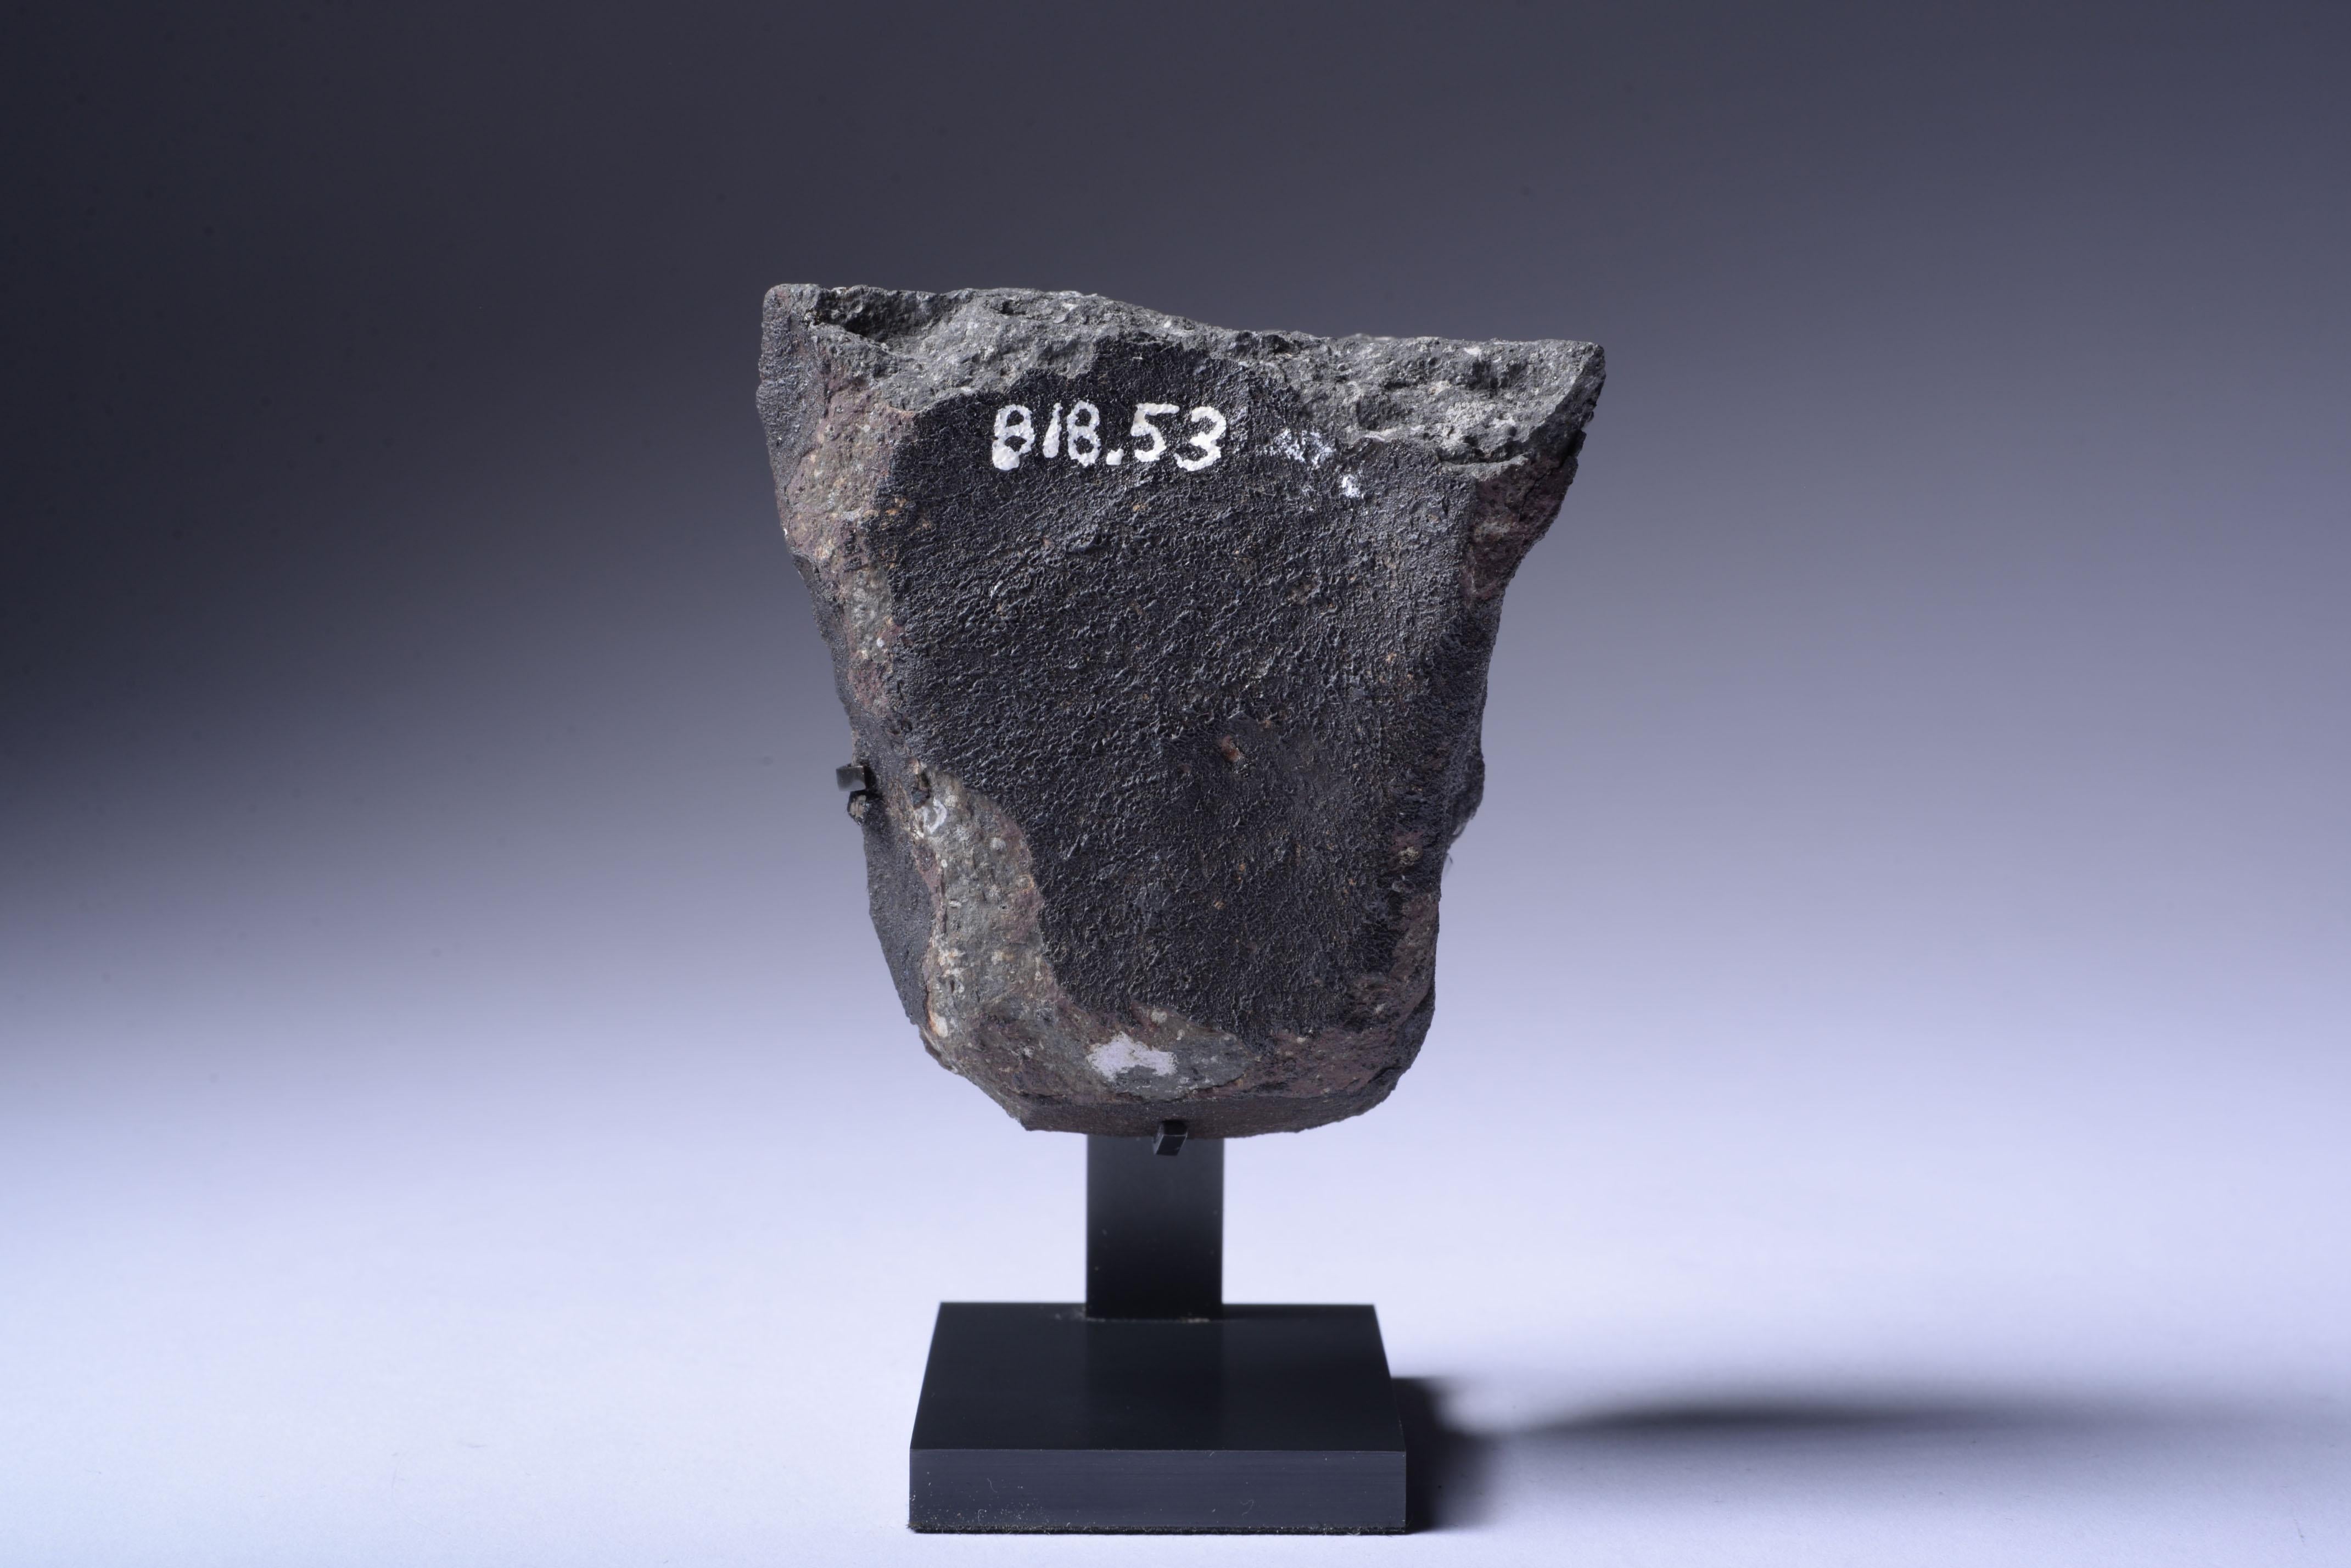 Poussière d'étoiles présolaires - Un morceau de la météorite d'Allende
Chondrite carbonée - CV3
Hauteur 6,98 cm
280 g

